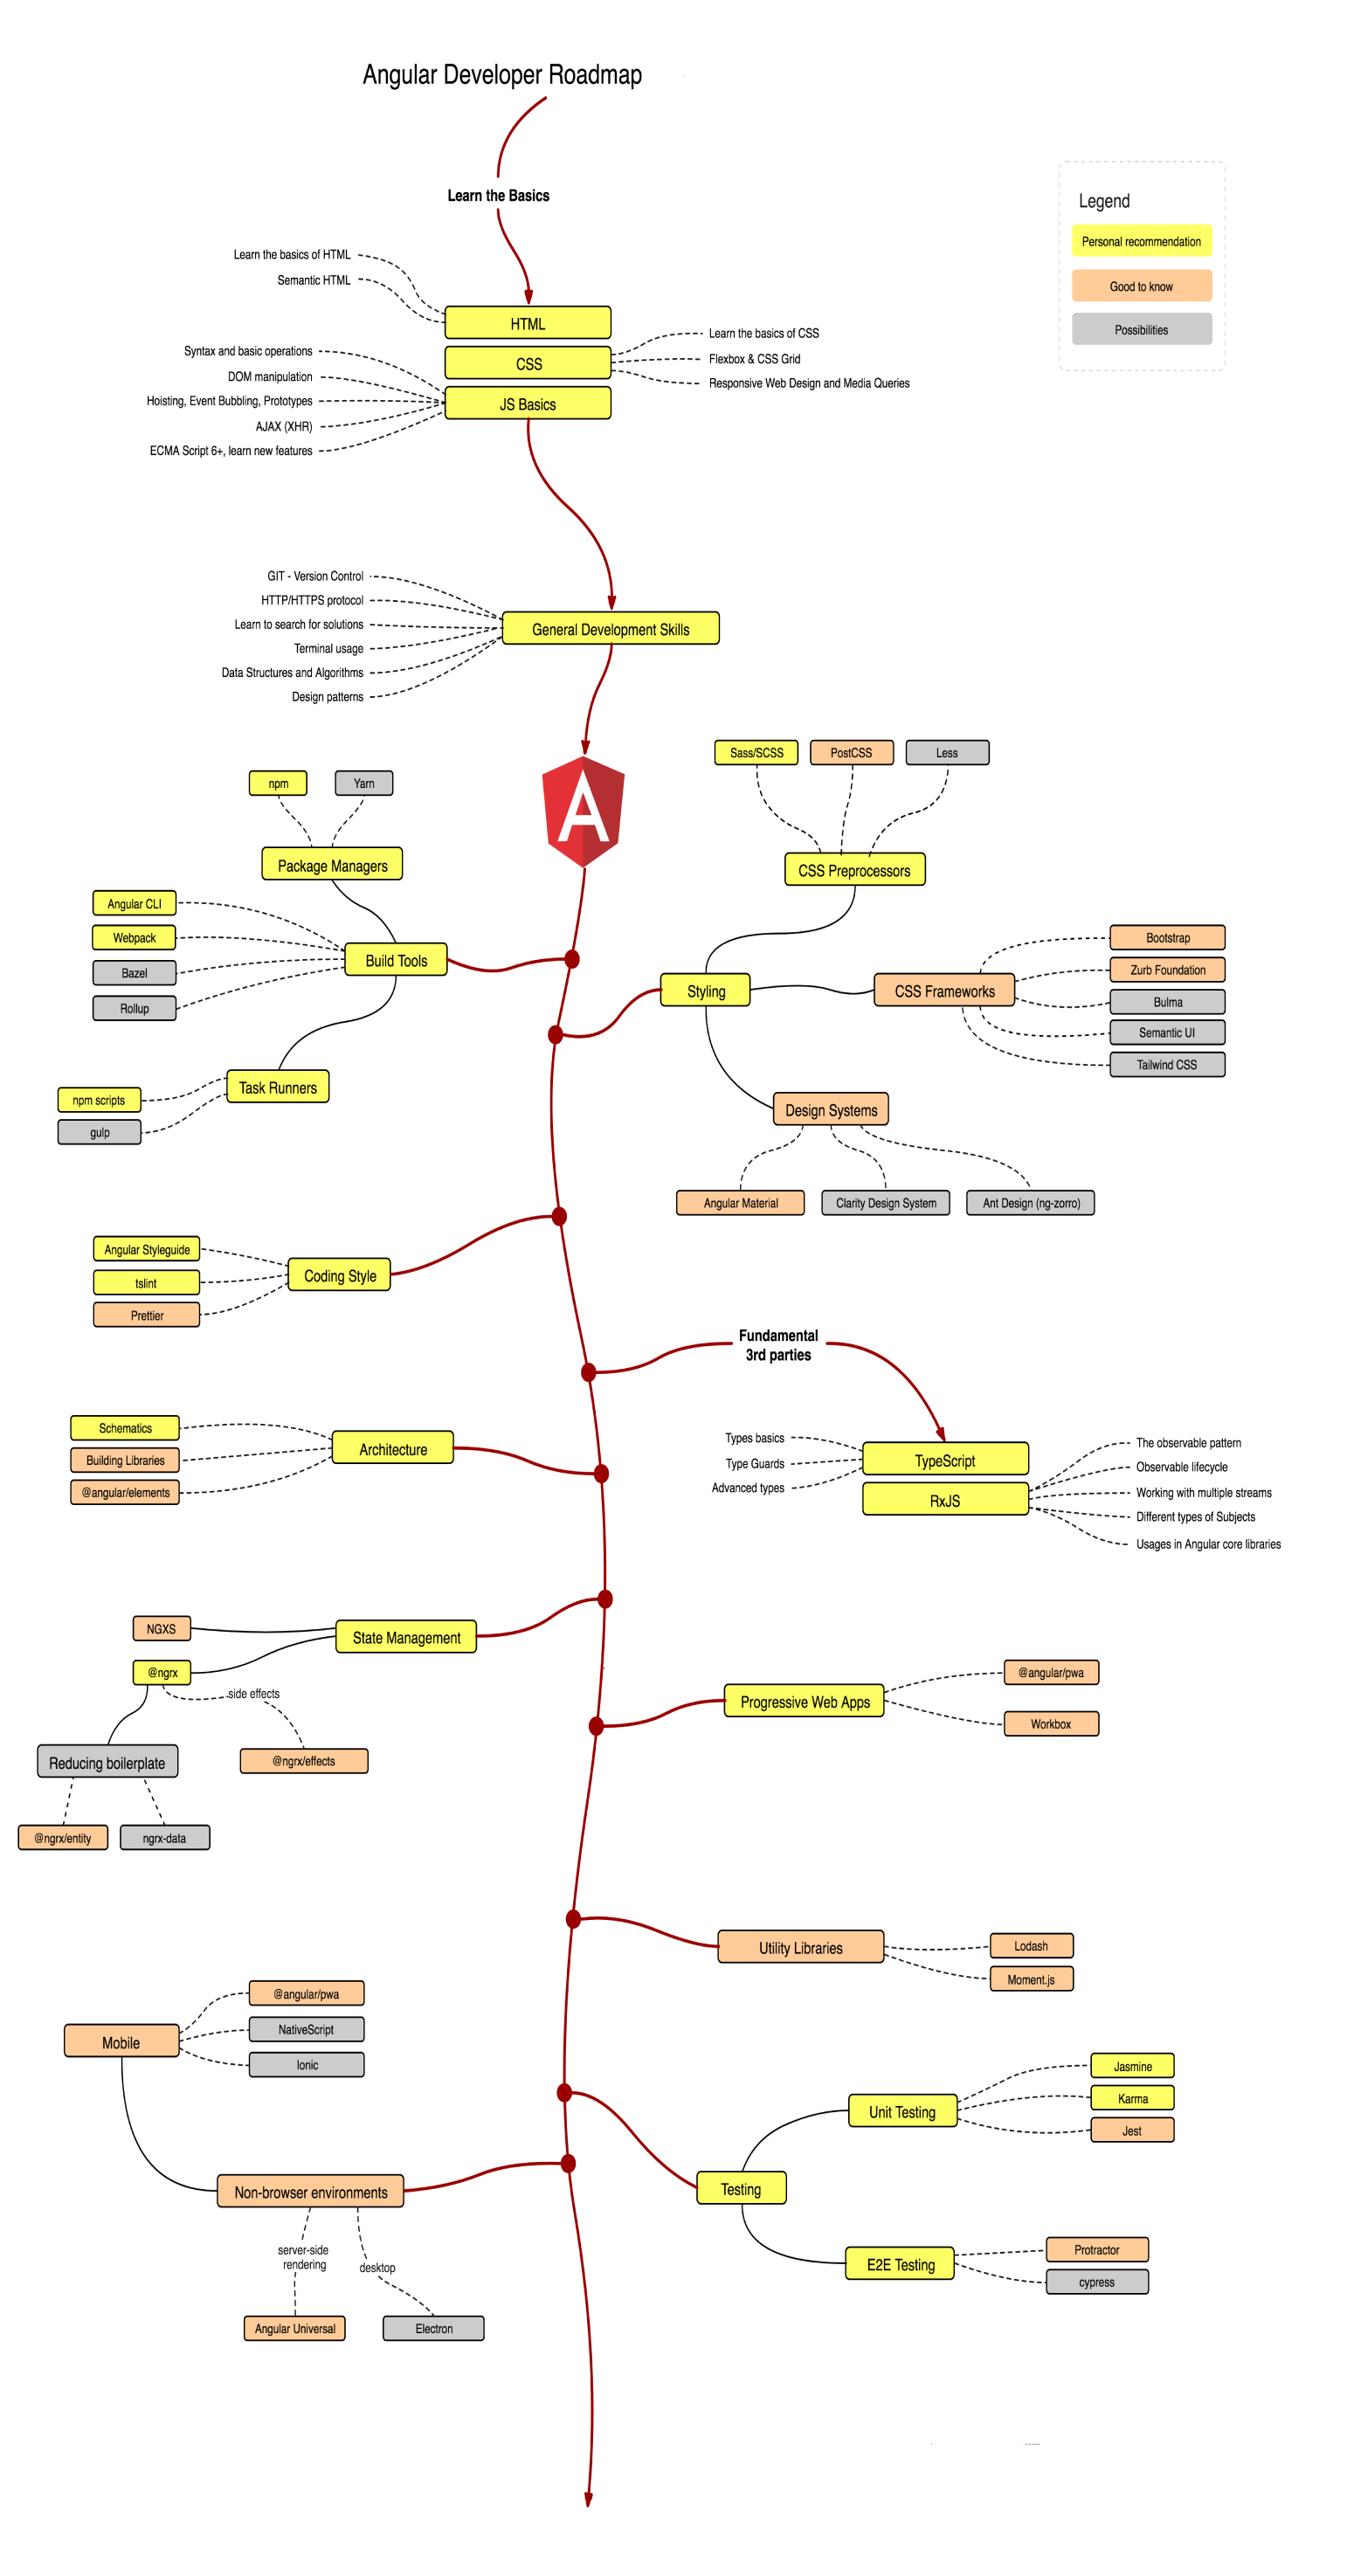 Дорожная карта Angular-разработчика